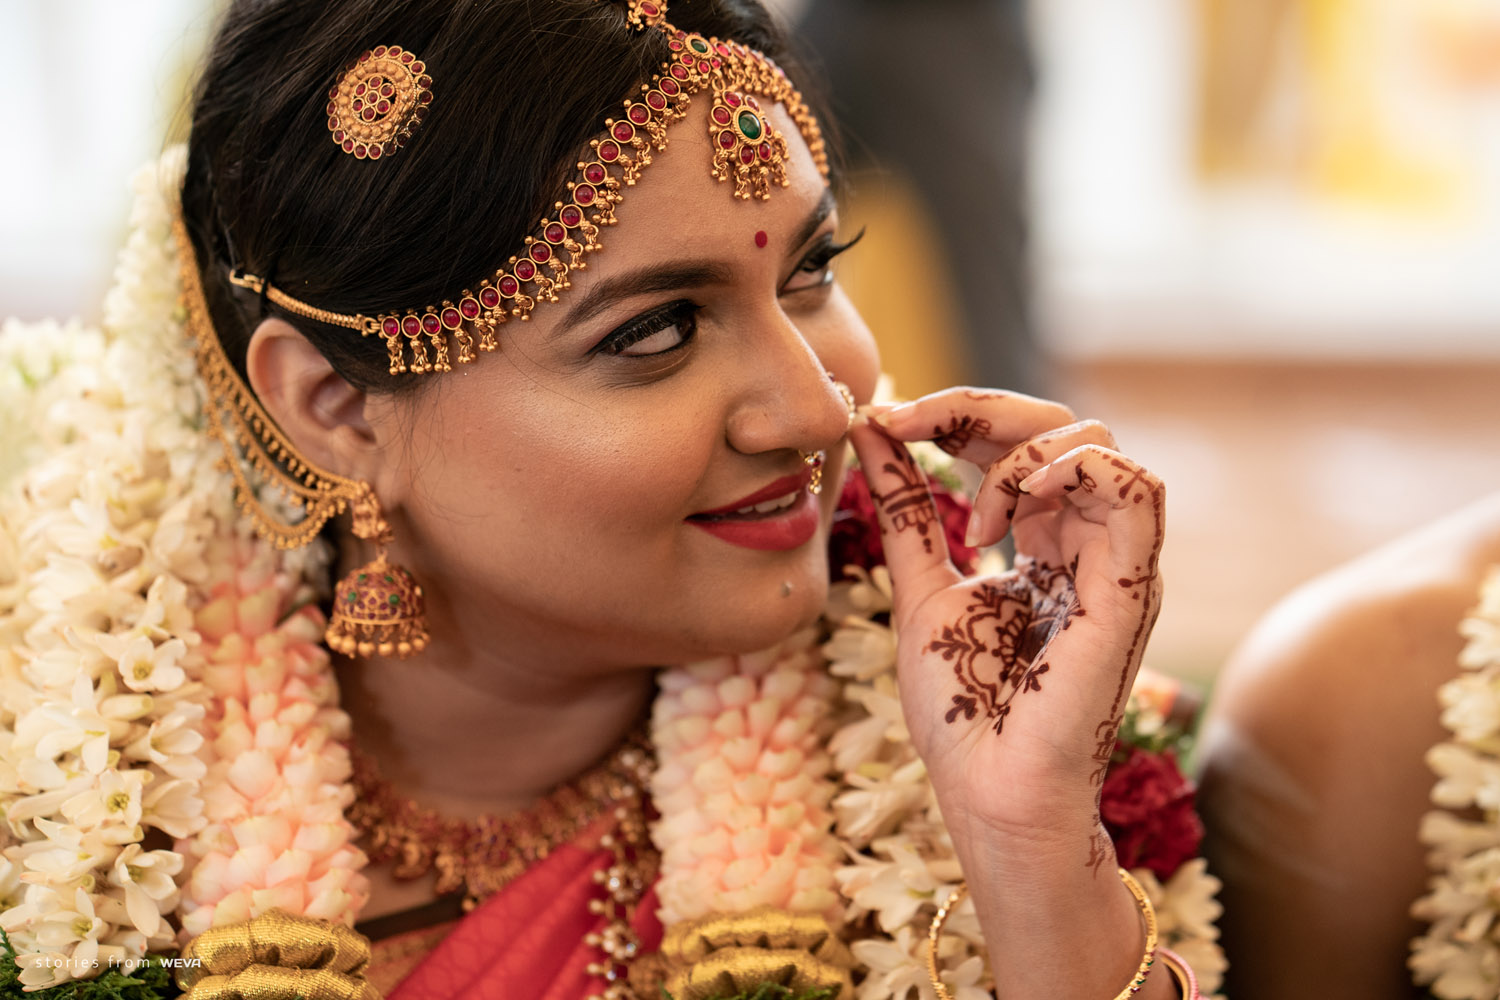 Bridal Portraits | Indian bride poses, Bride photos poses, Indian bride  photography poses